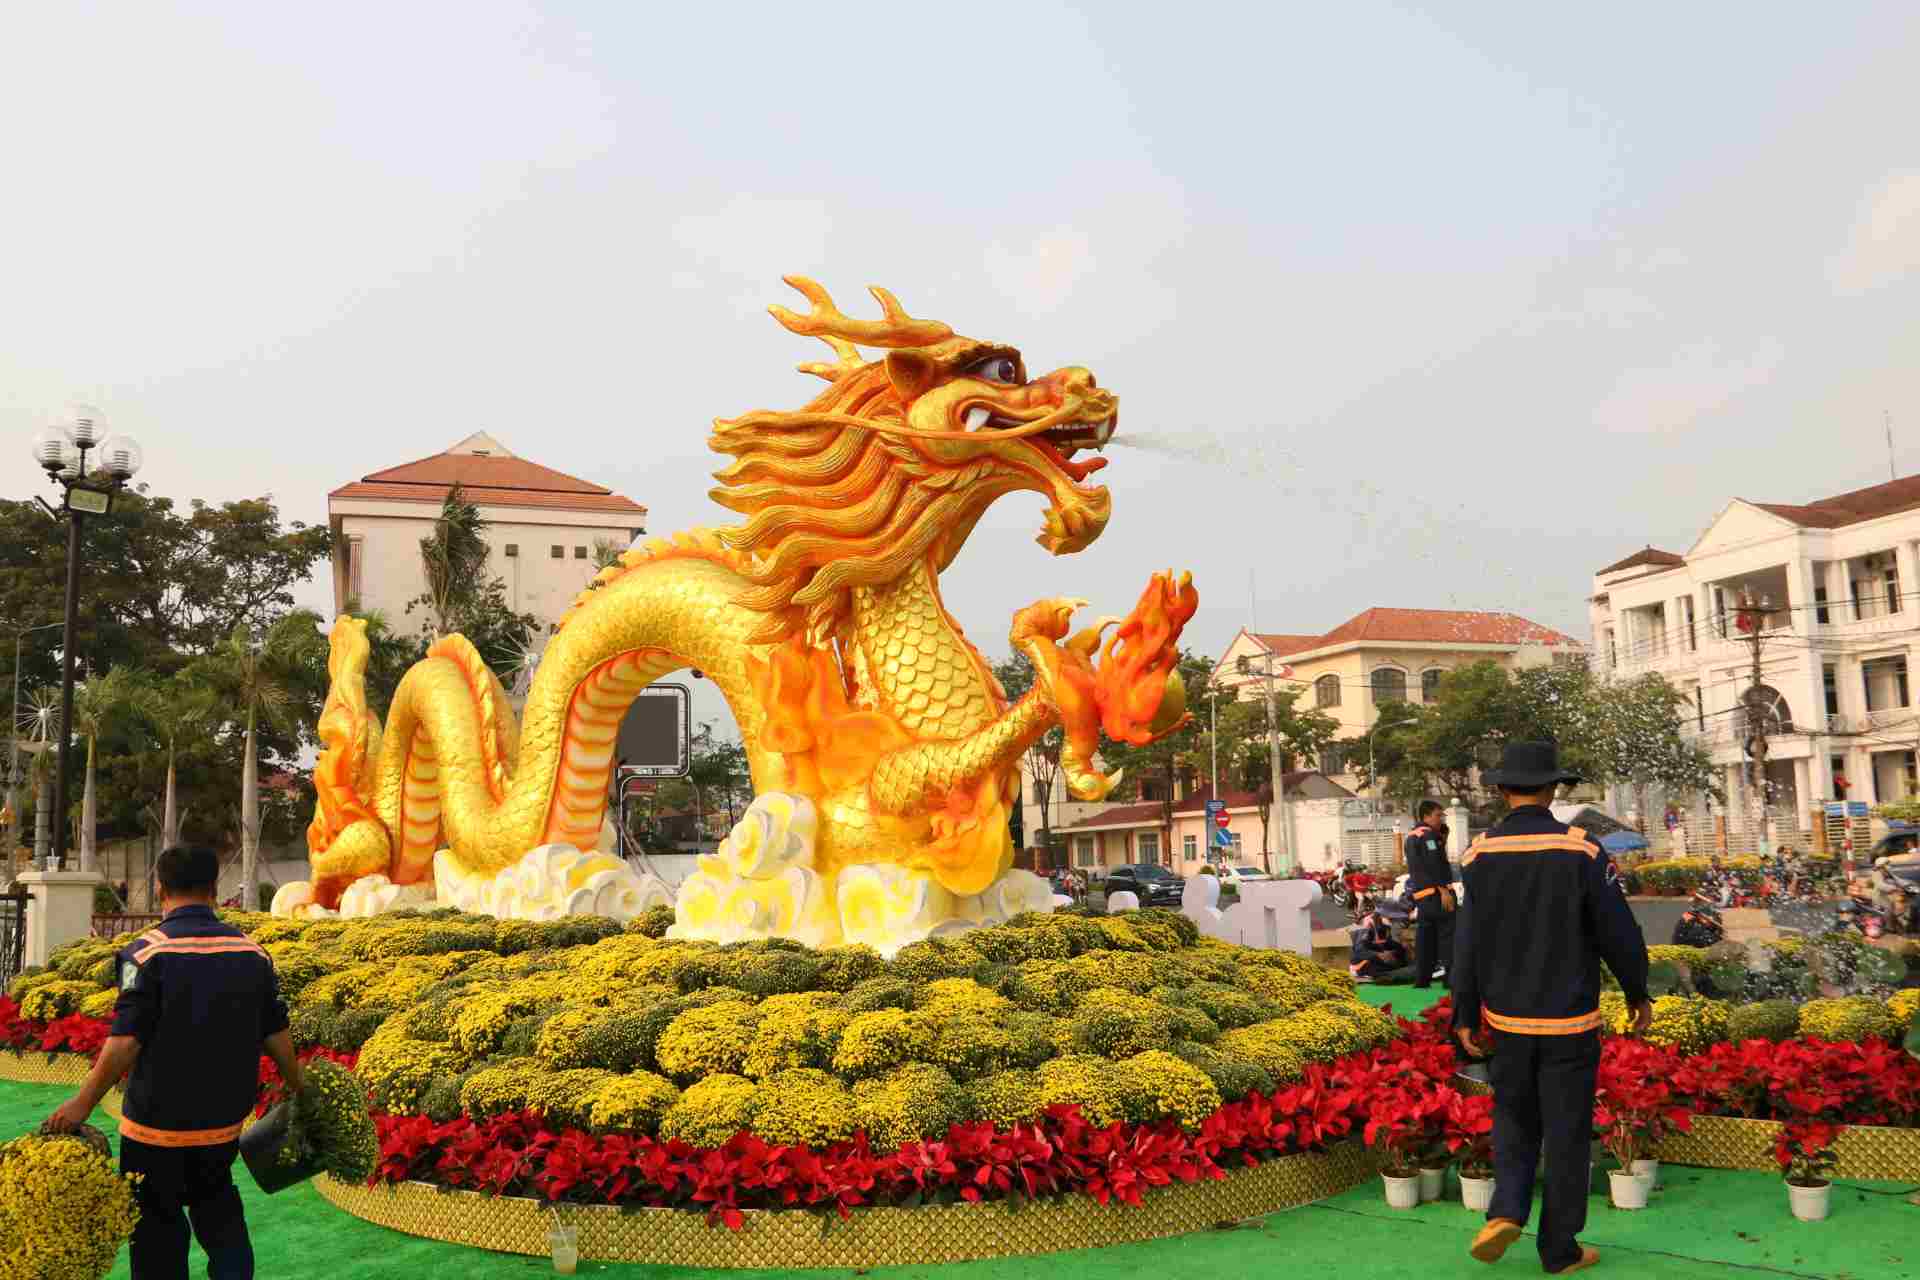 Linh vật rồng vàng phun nước dài 12m cao 3m được tạo nên từ chủ yếu là xốp, keo, sơn màu, đế sắt, xung quanh trang trí hoa tươi.